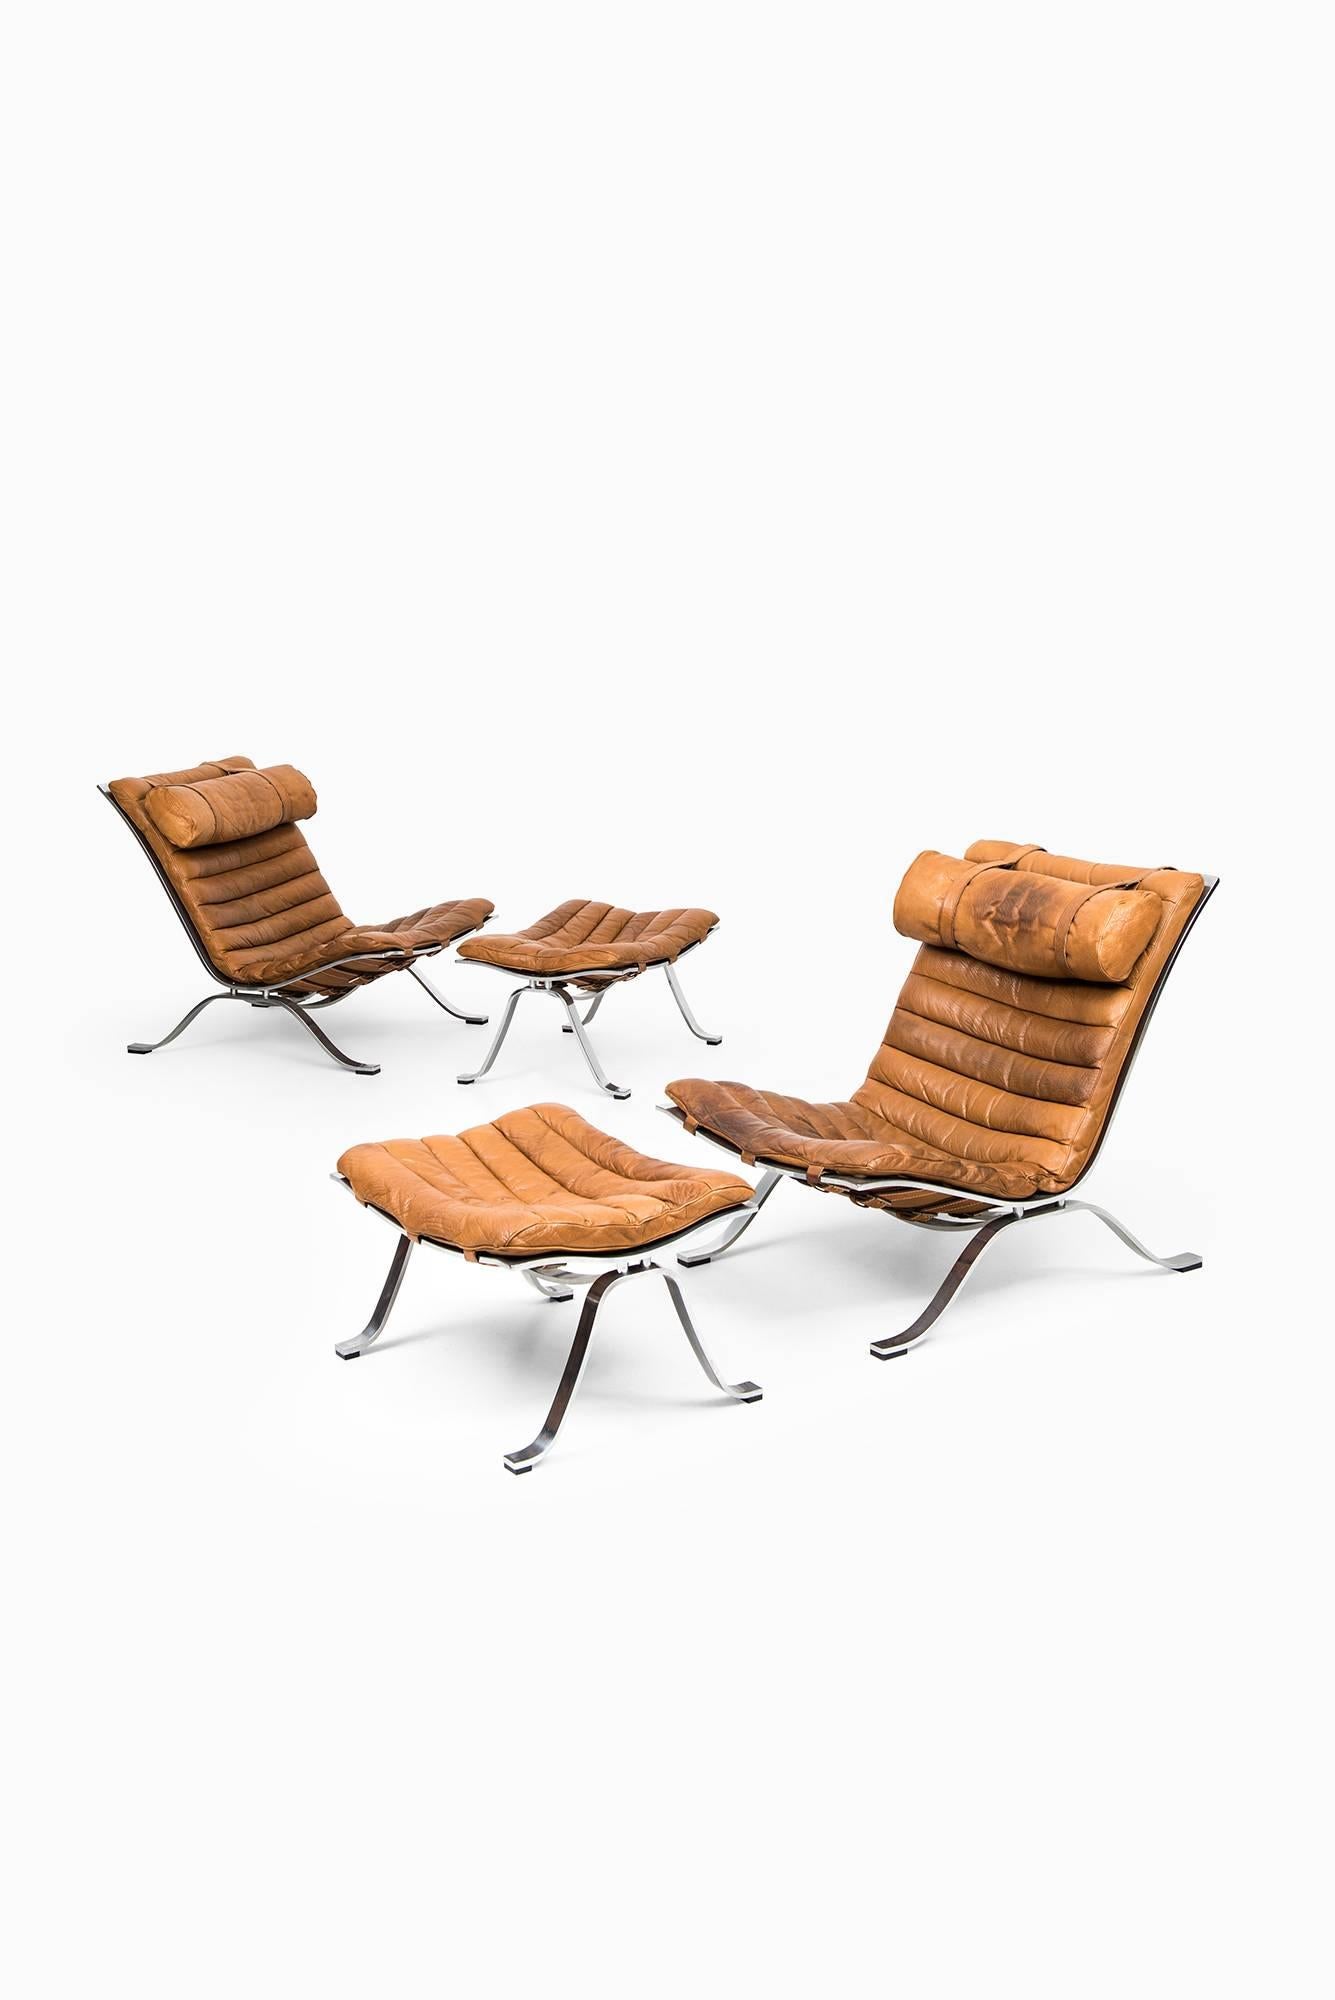 Rare paire de fauteuils avec tabourets de pied modèle Aris conçue par Arne Norells. Produit par Arne Norell AB à Aneby, Suède.